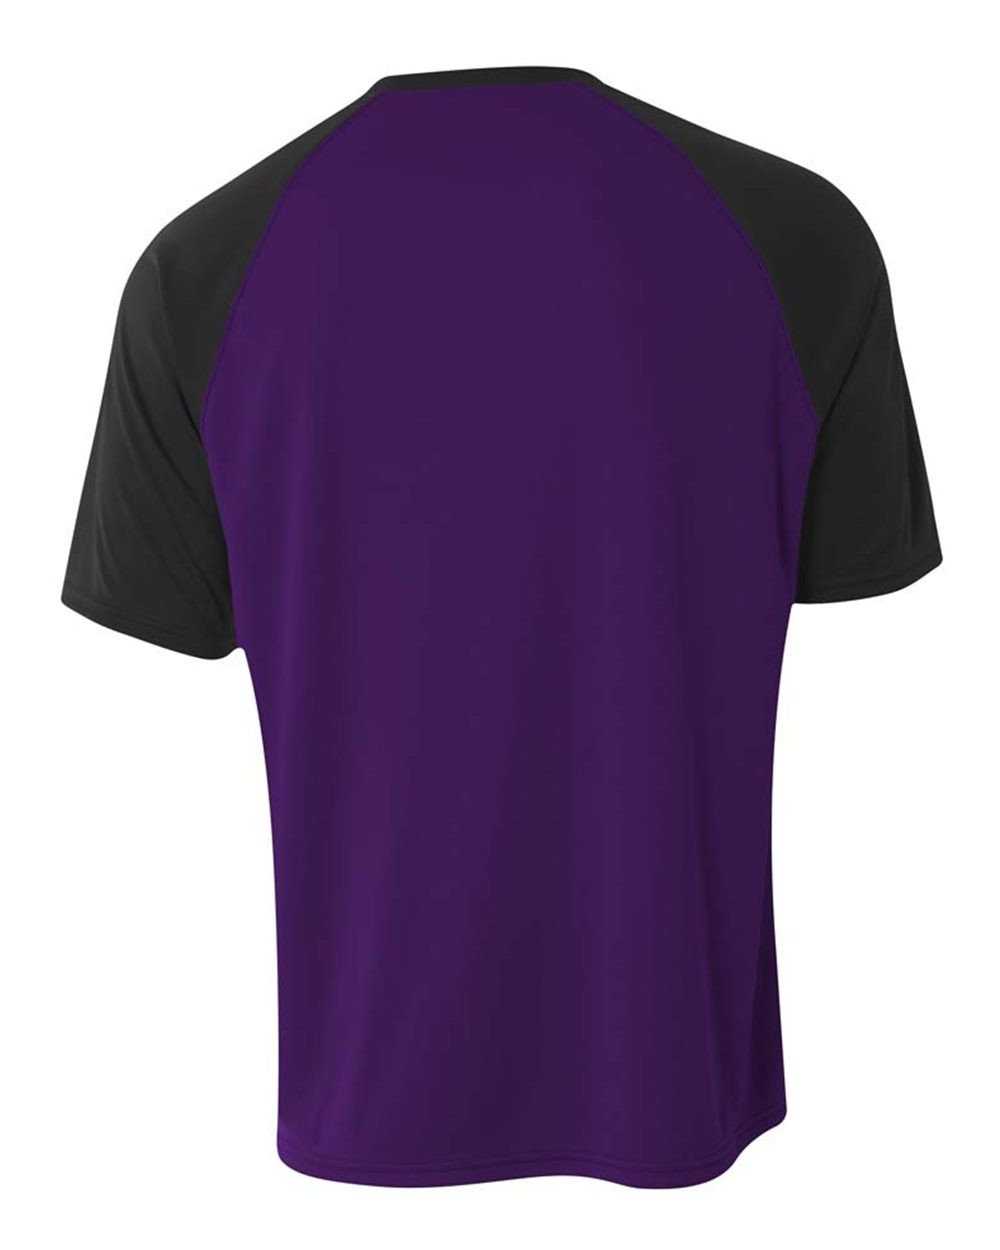 A4 N3373 Strike Jersey - Purple Black - HIT a Double